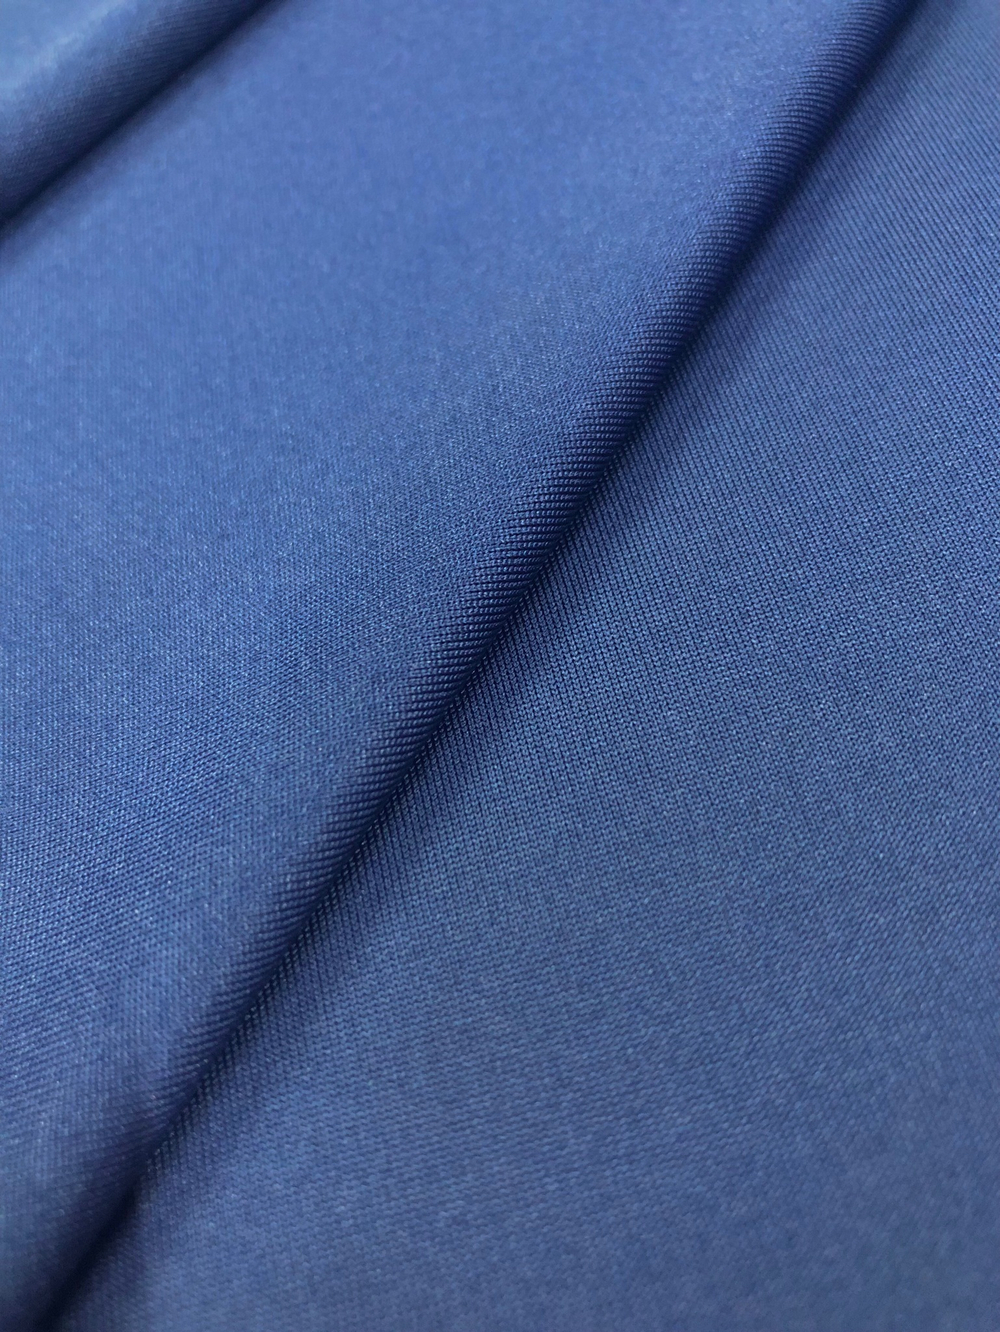 Ткань Трикотаж Масло , темно синий, арт. 327805